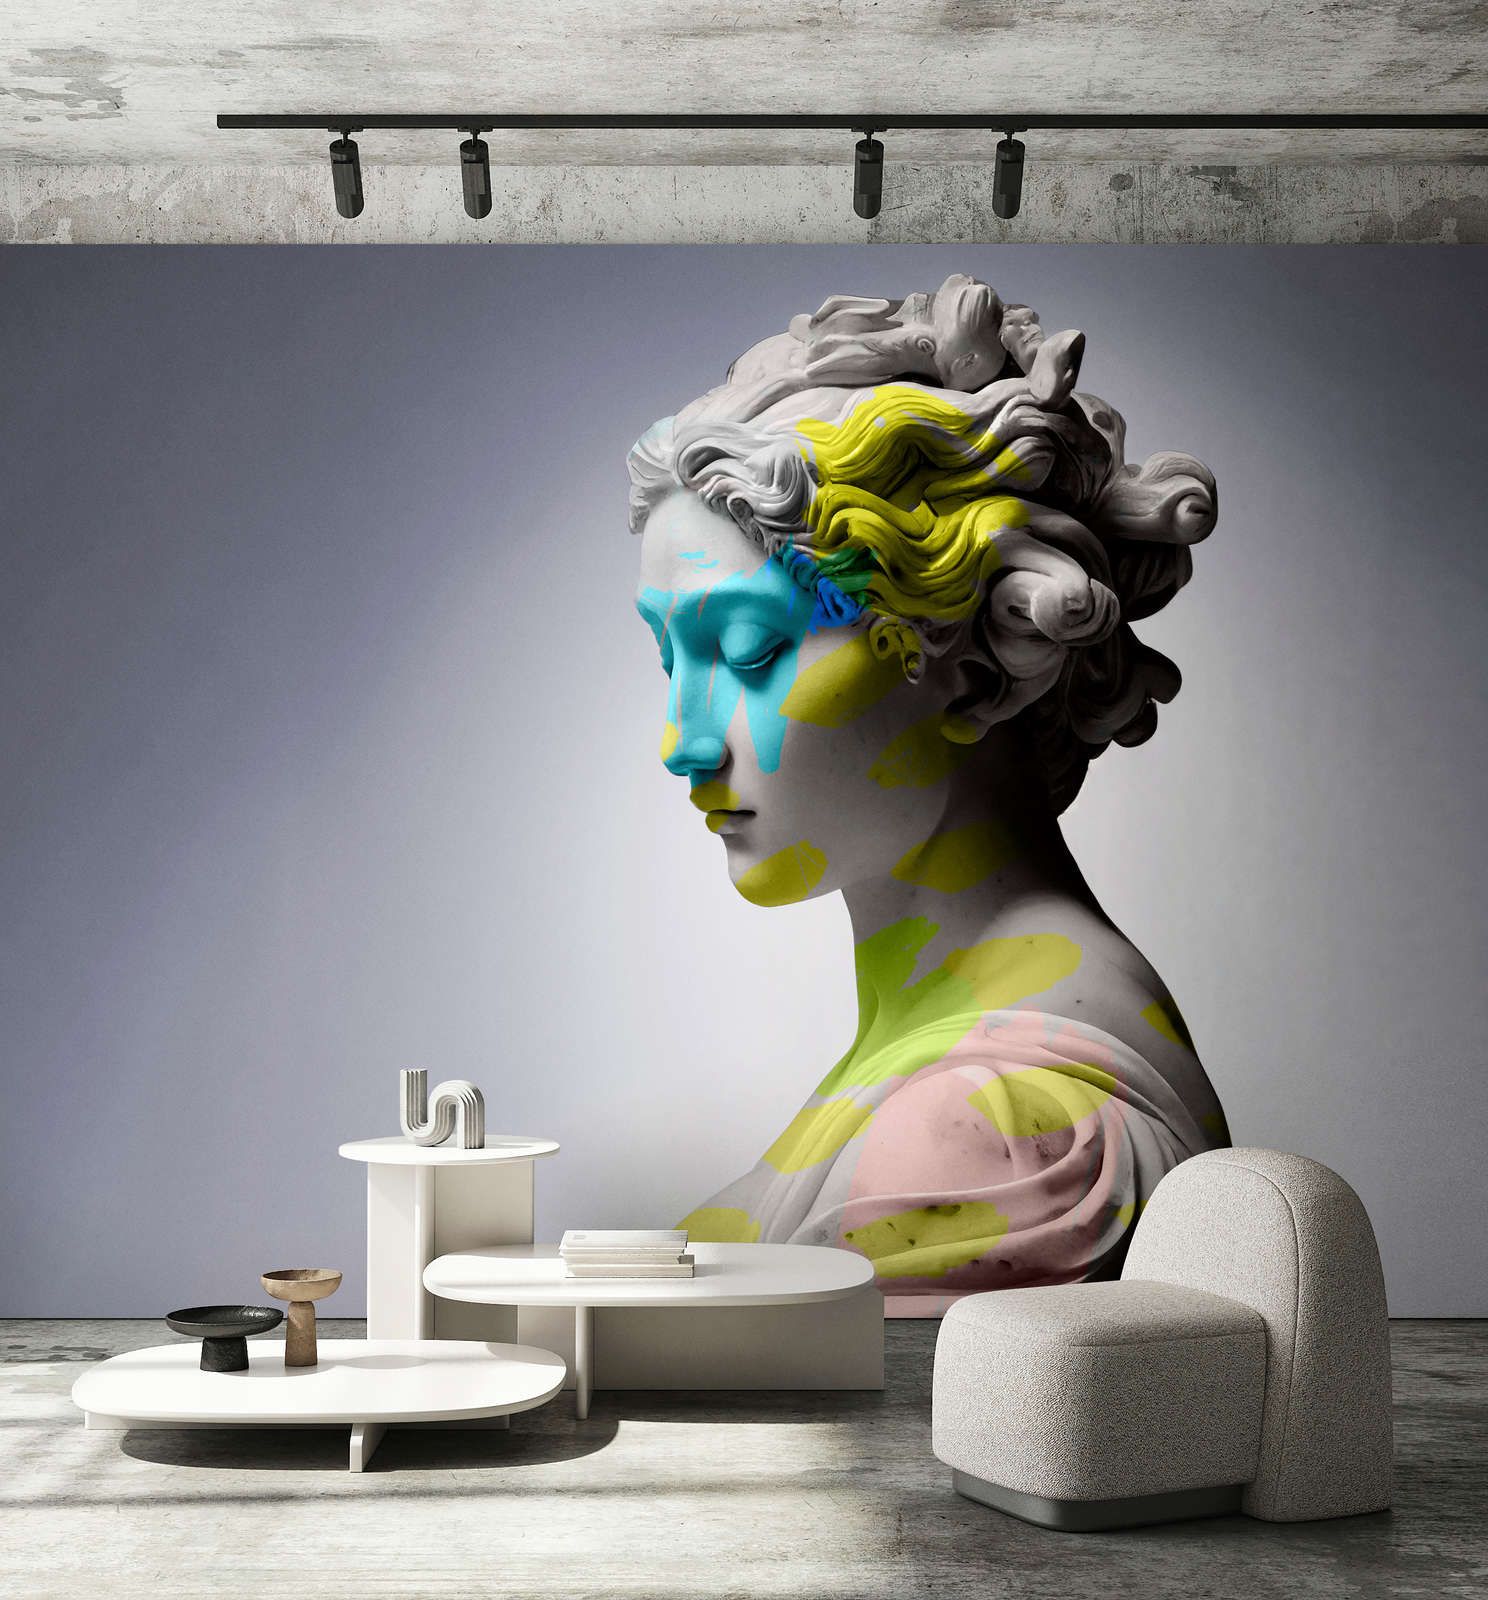             Fotomurali »clio« - scultura femminile con accenti colorati - Materiali non tessuto premium liscio e leggermente lucido
        